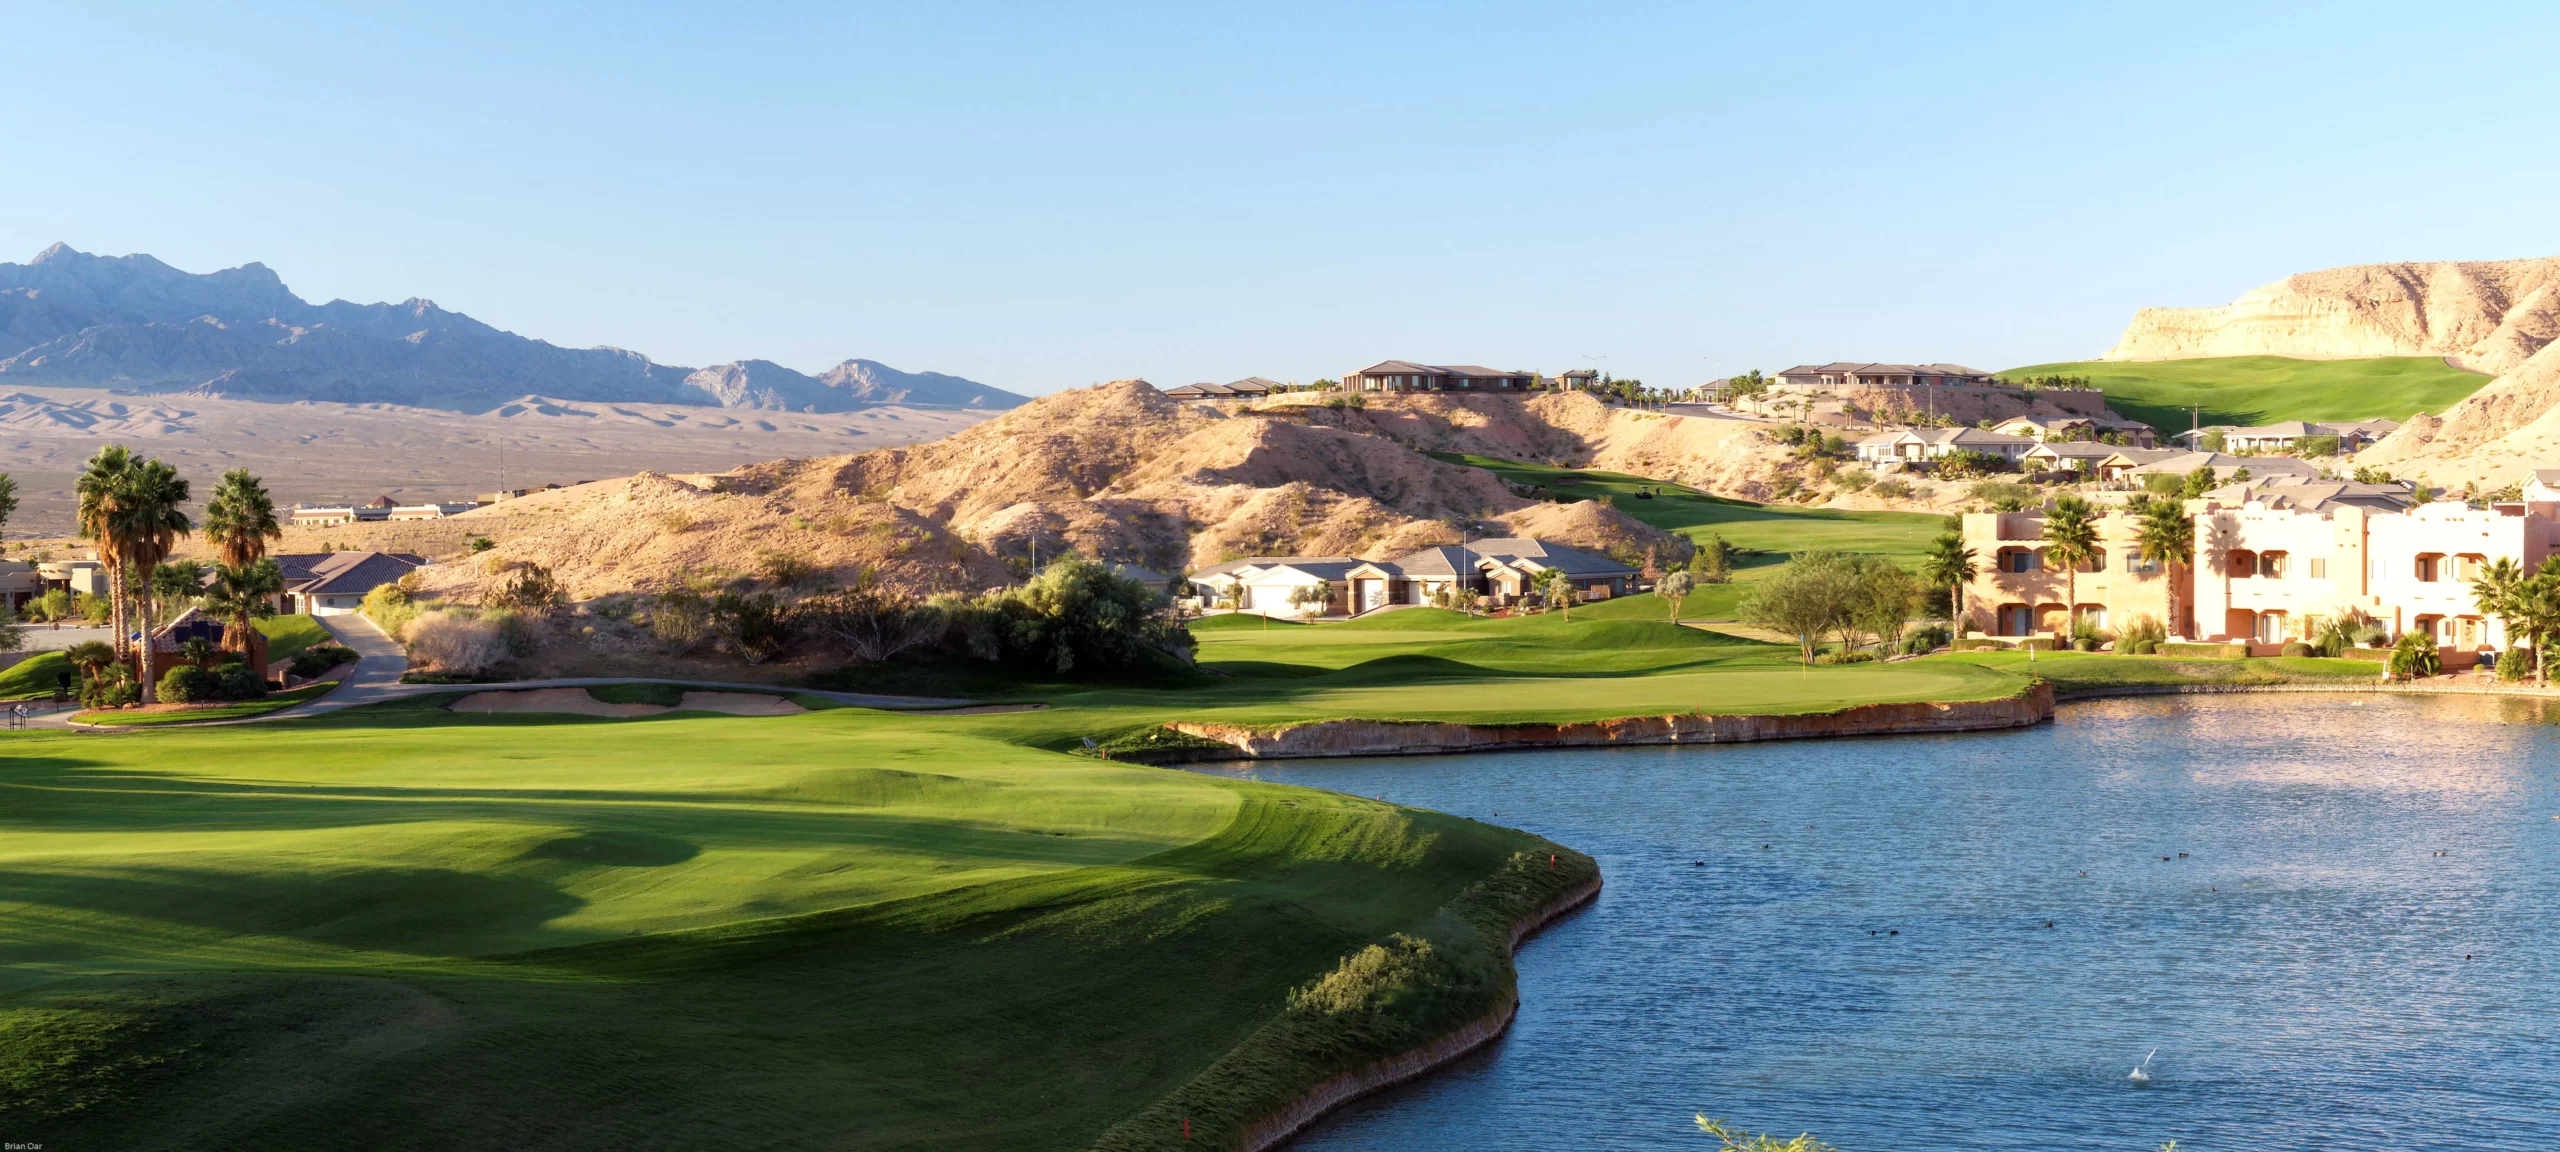 Al Qudra Golf Club - прекрасное место для игры в гольф в Дубае, ОАЭ.